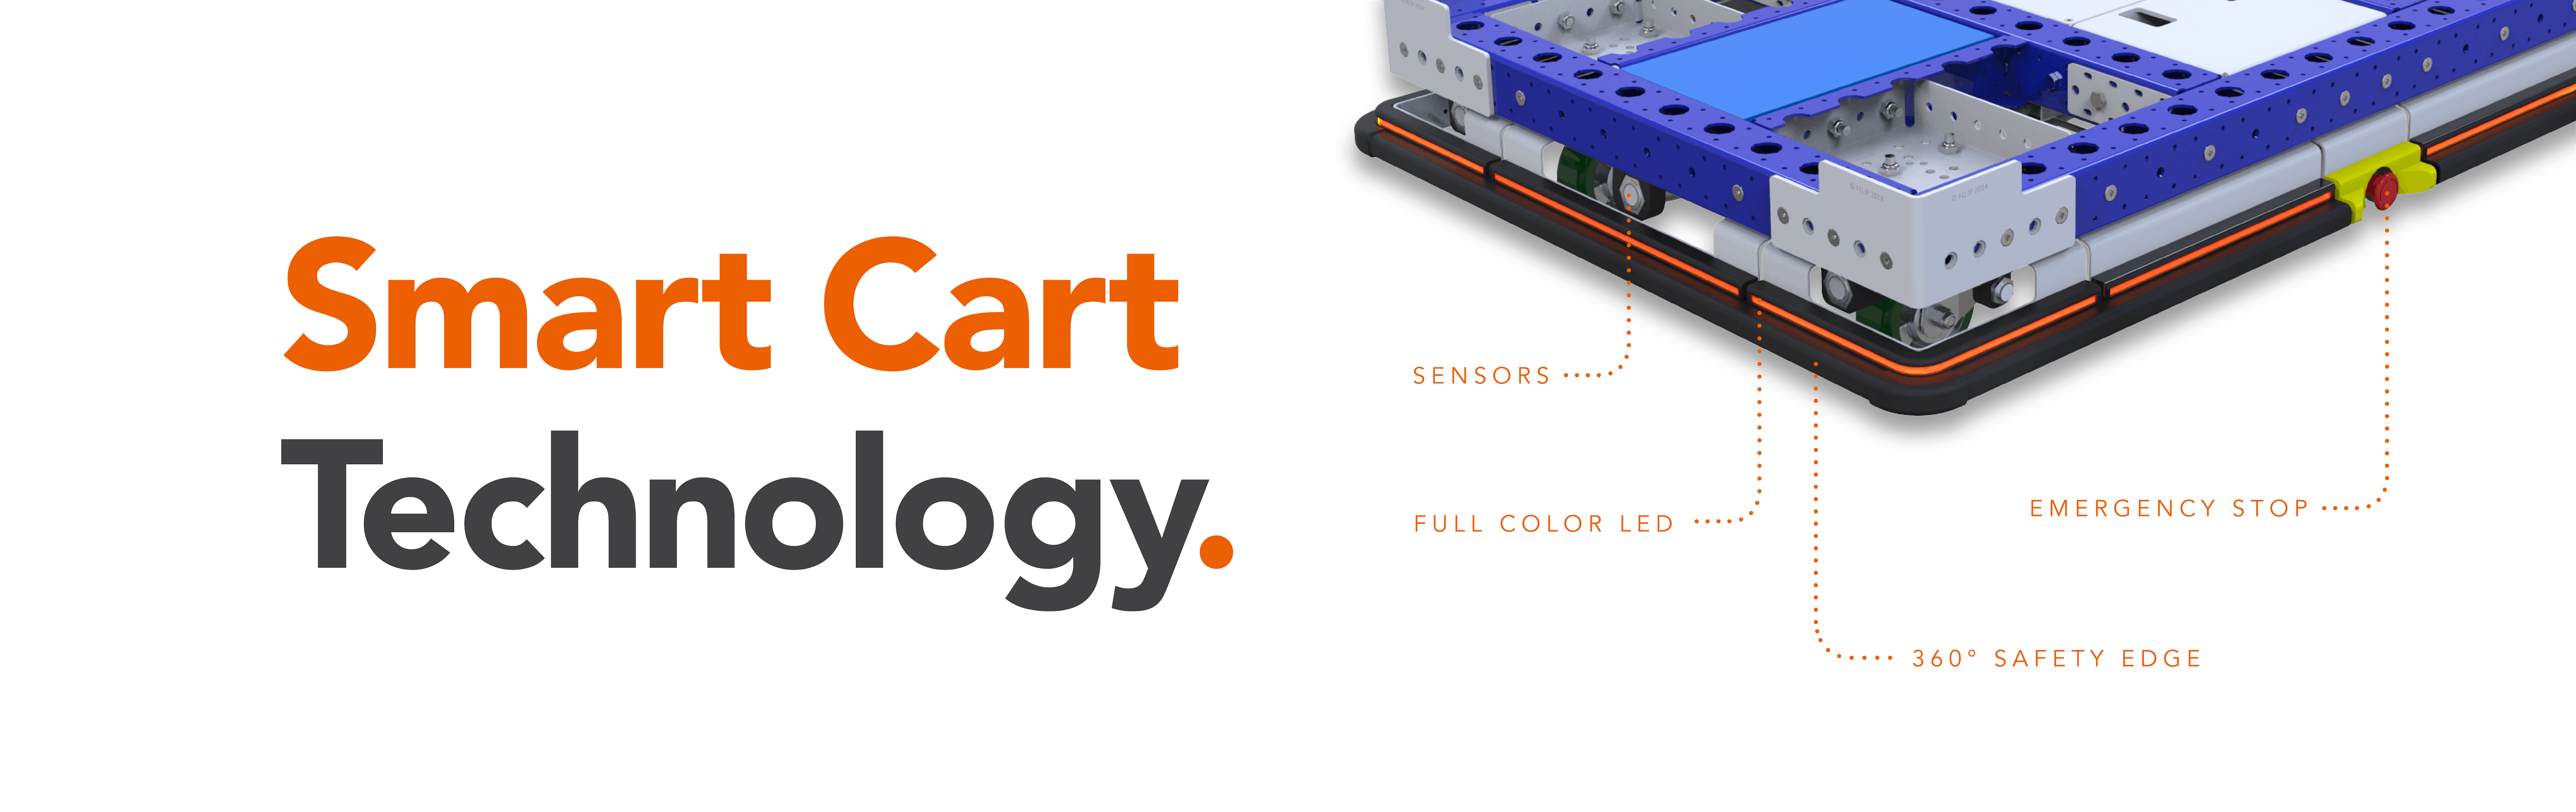 Smart Cart Technology eQart banner